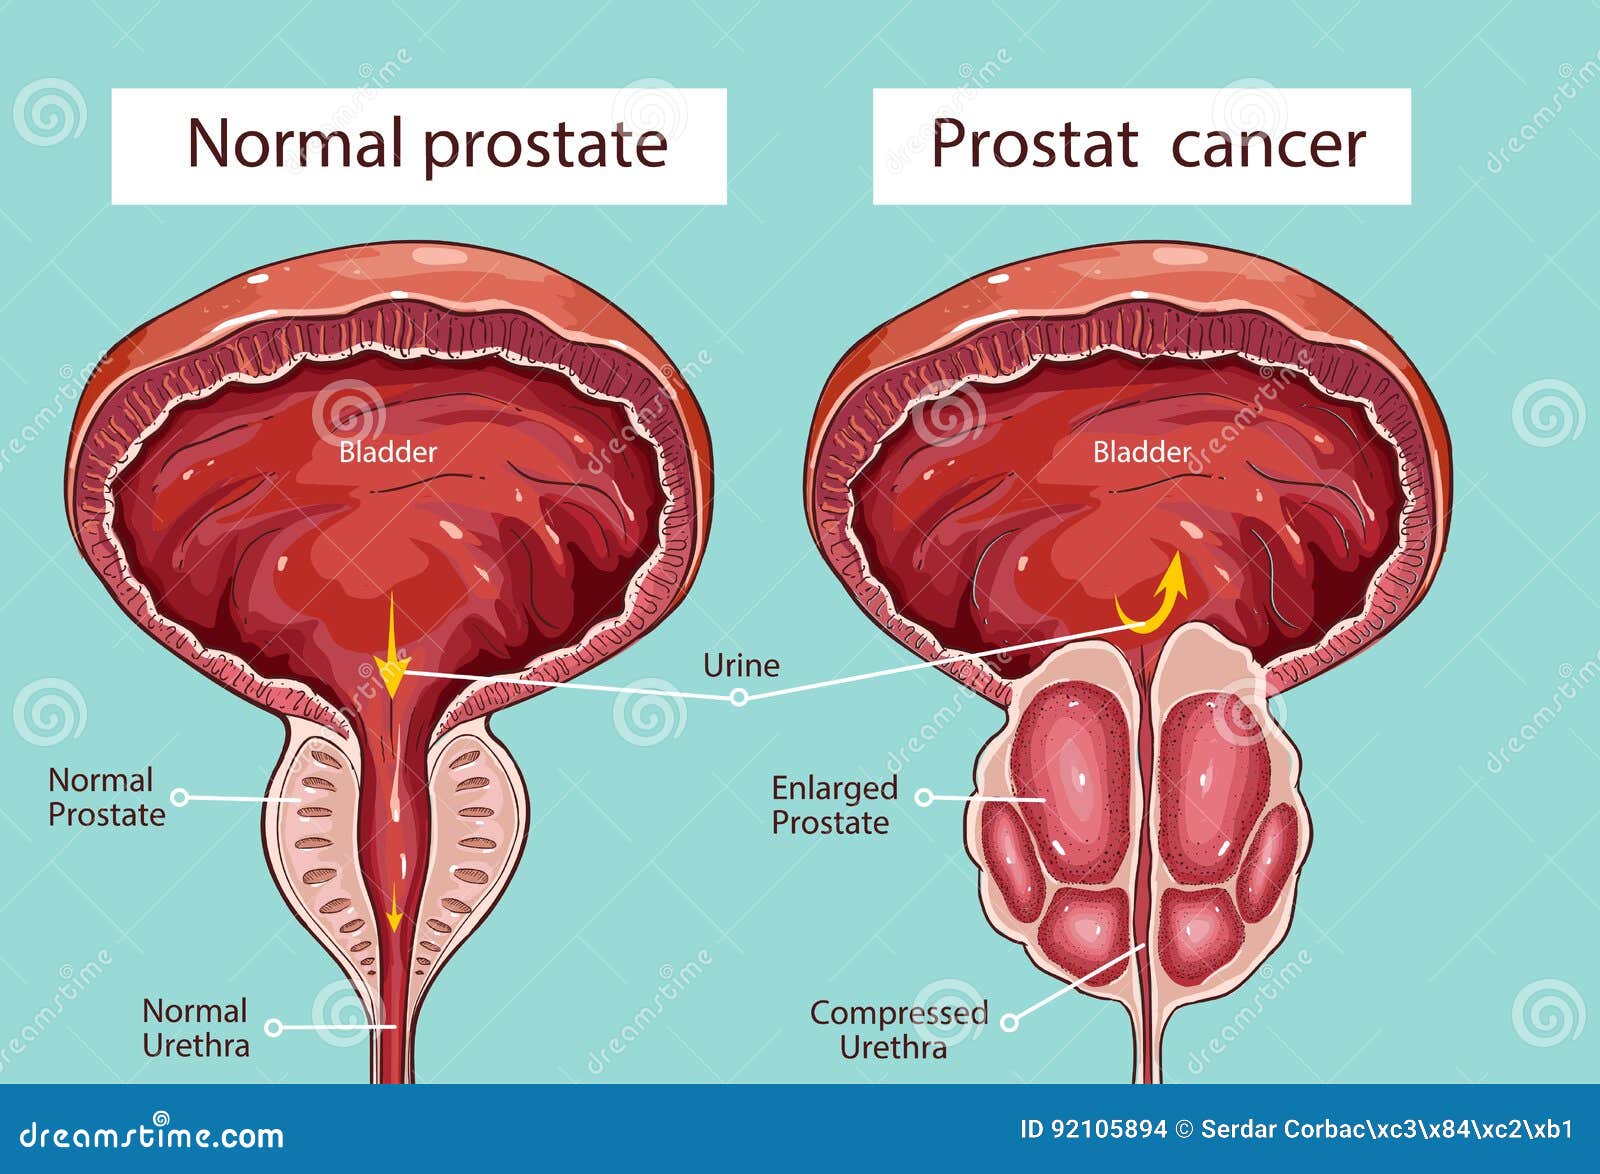 cum se întâmplă când prostatita advanced prostate cancer forums